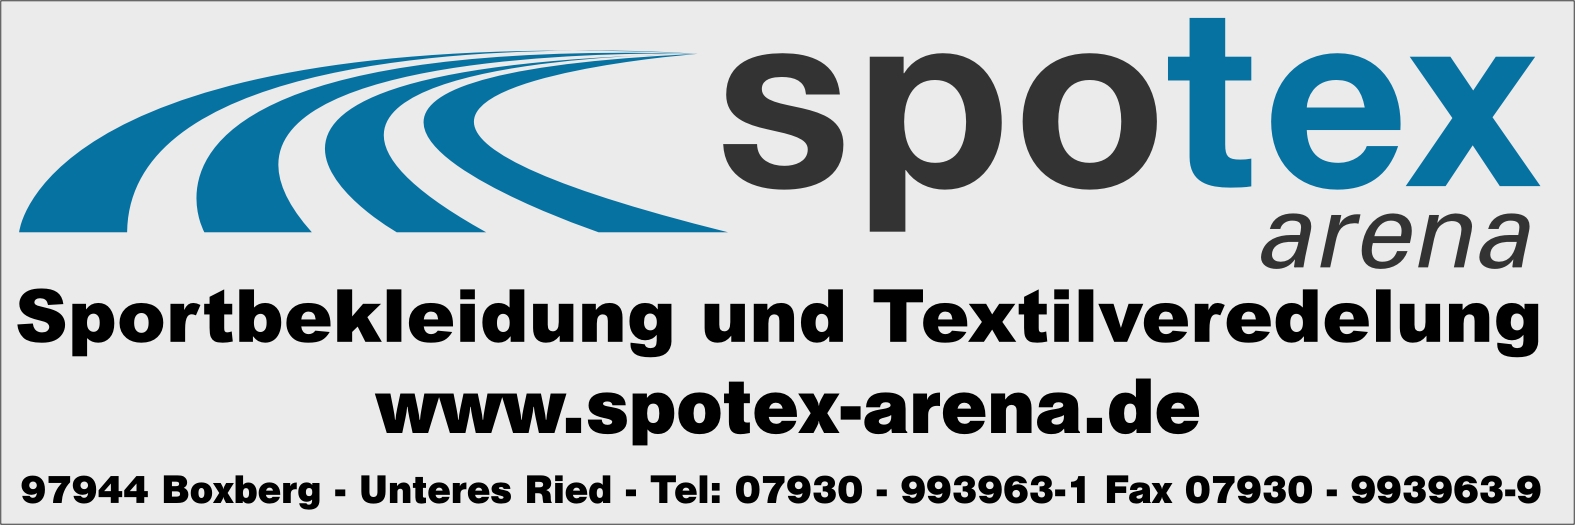 Spotex_Arena